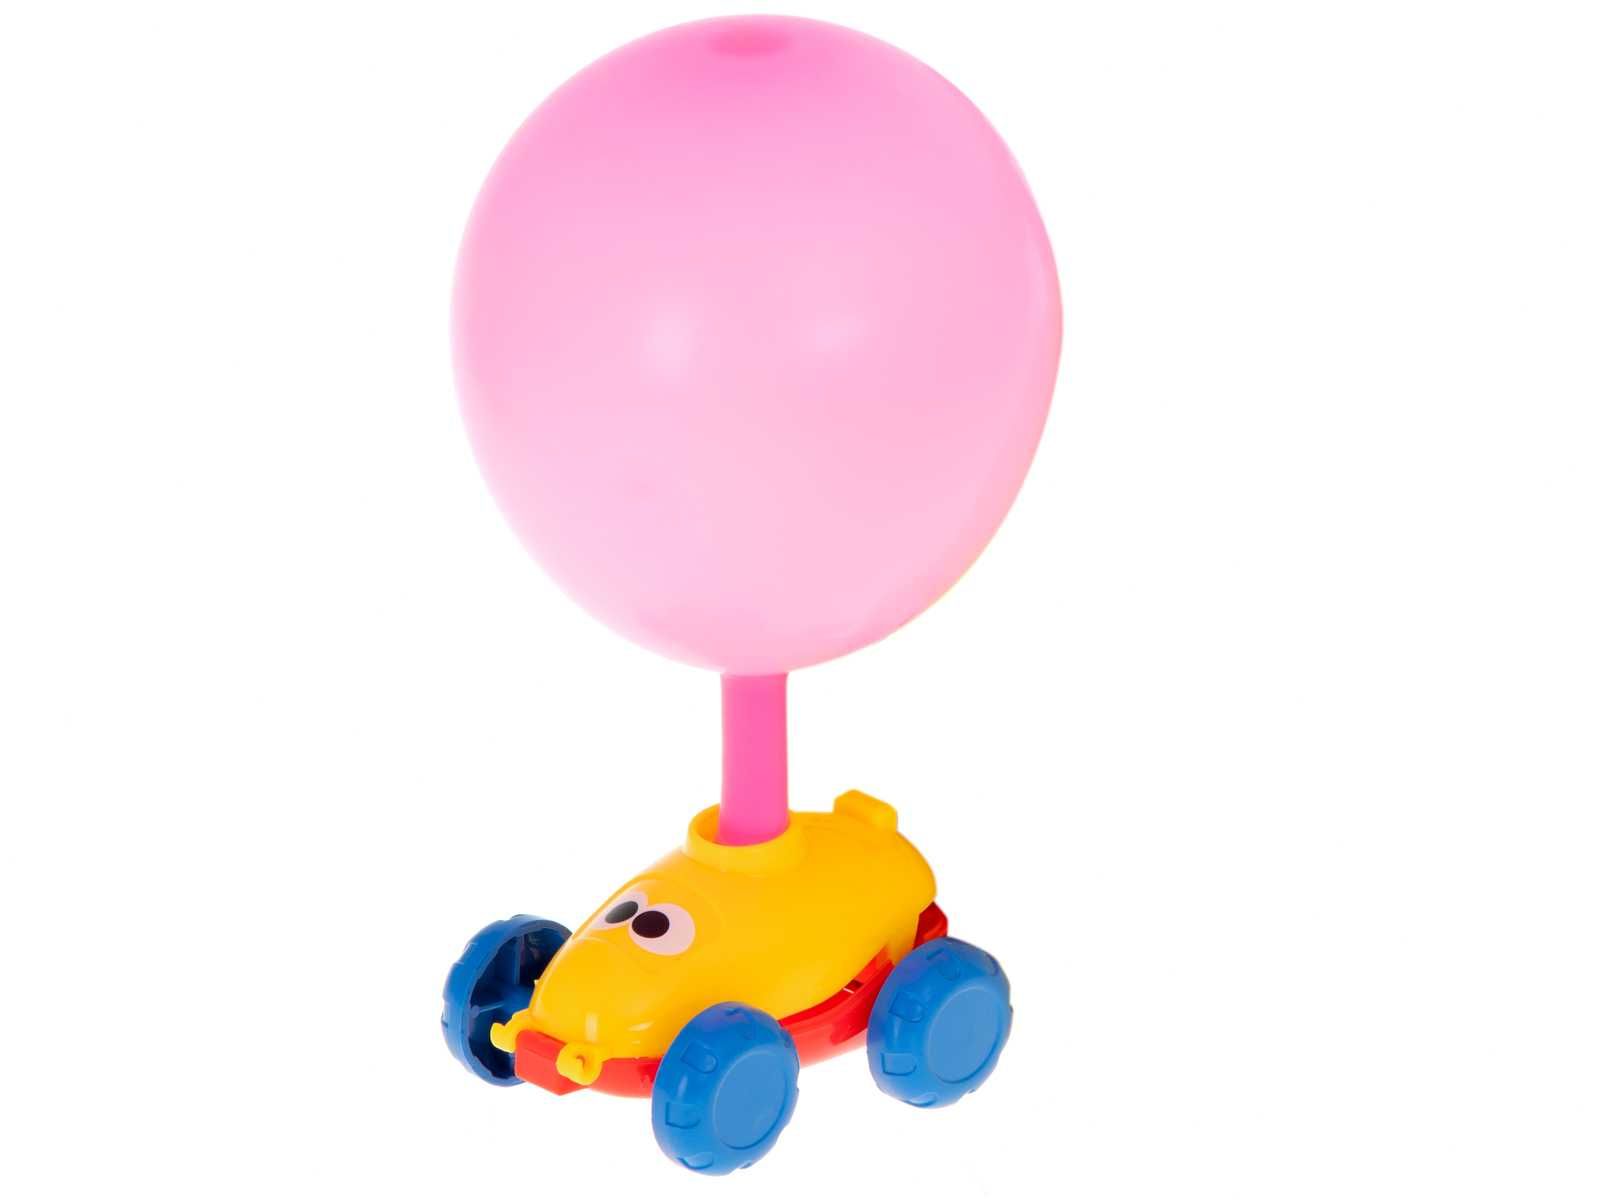 Gra wyrzutnia balonów zestaw aerodynamiczny